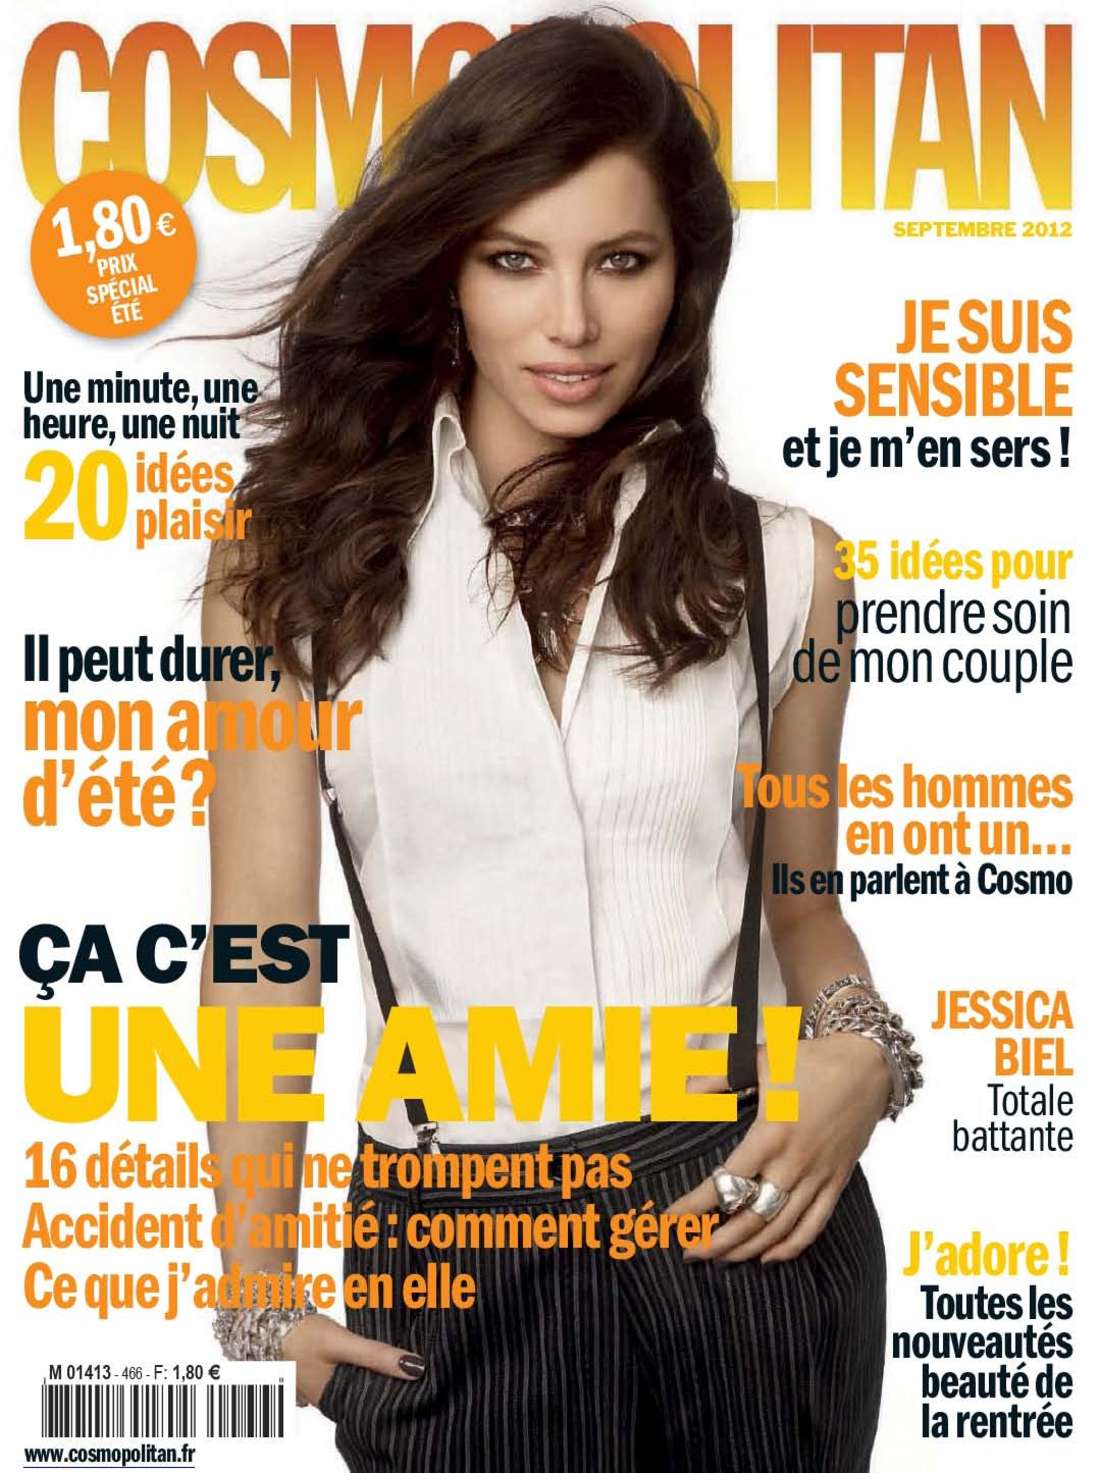 Jessica Biel in Cosmopolitan France Magazine - September 2012. 